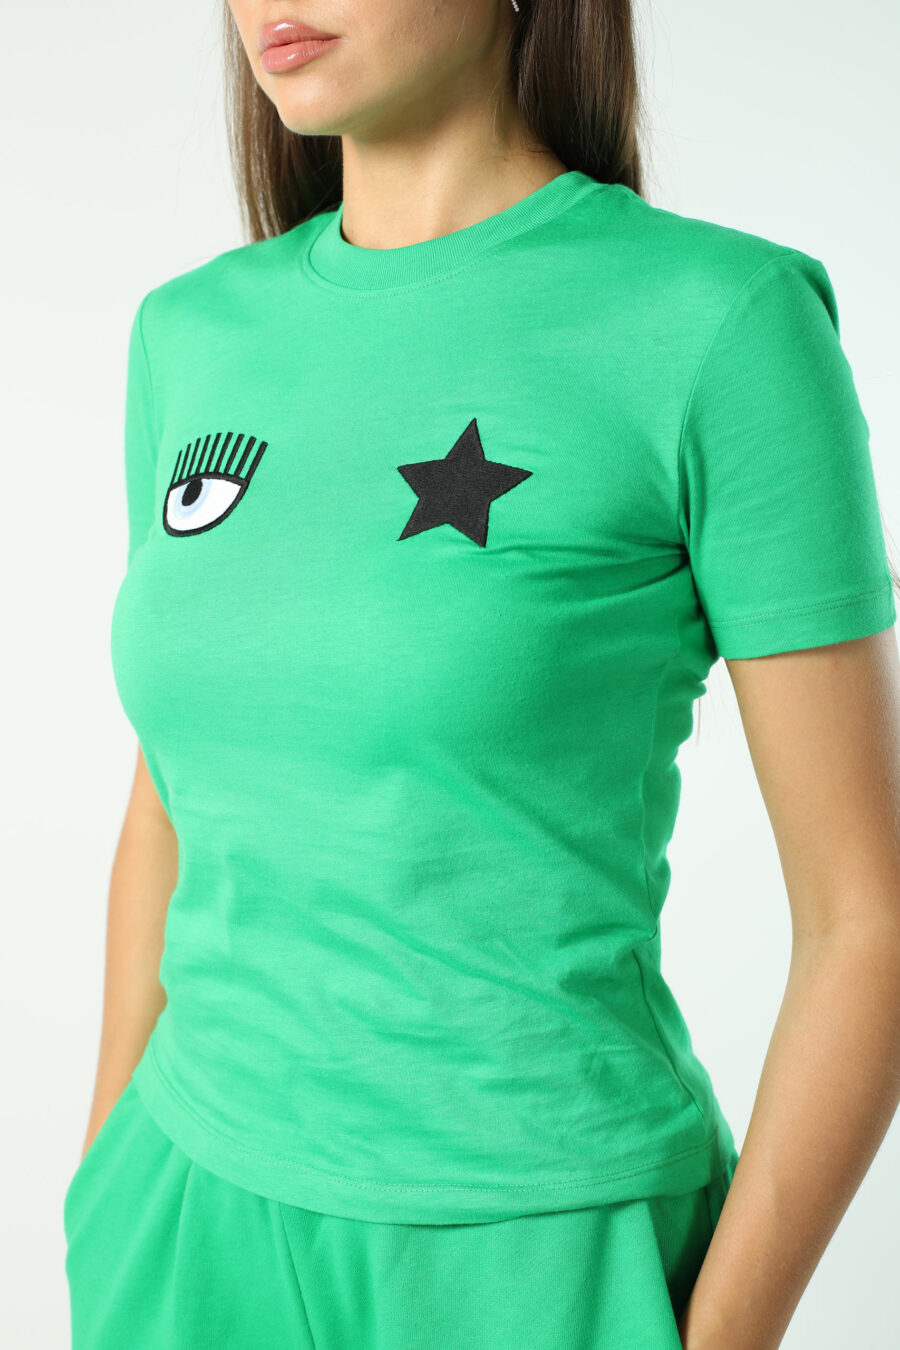 Camiseta verde claro con logo ojo y estrella - Photos 2584